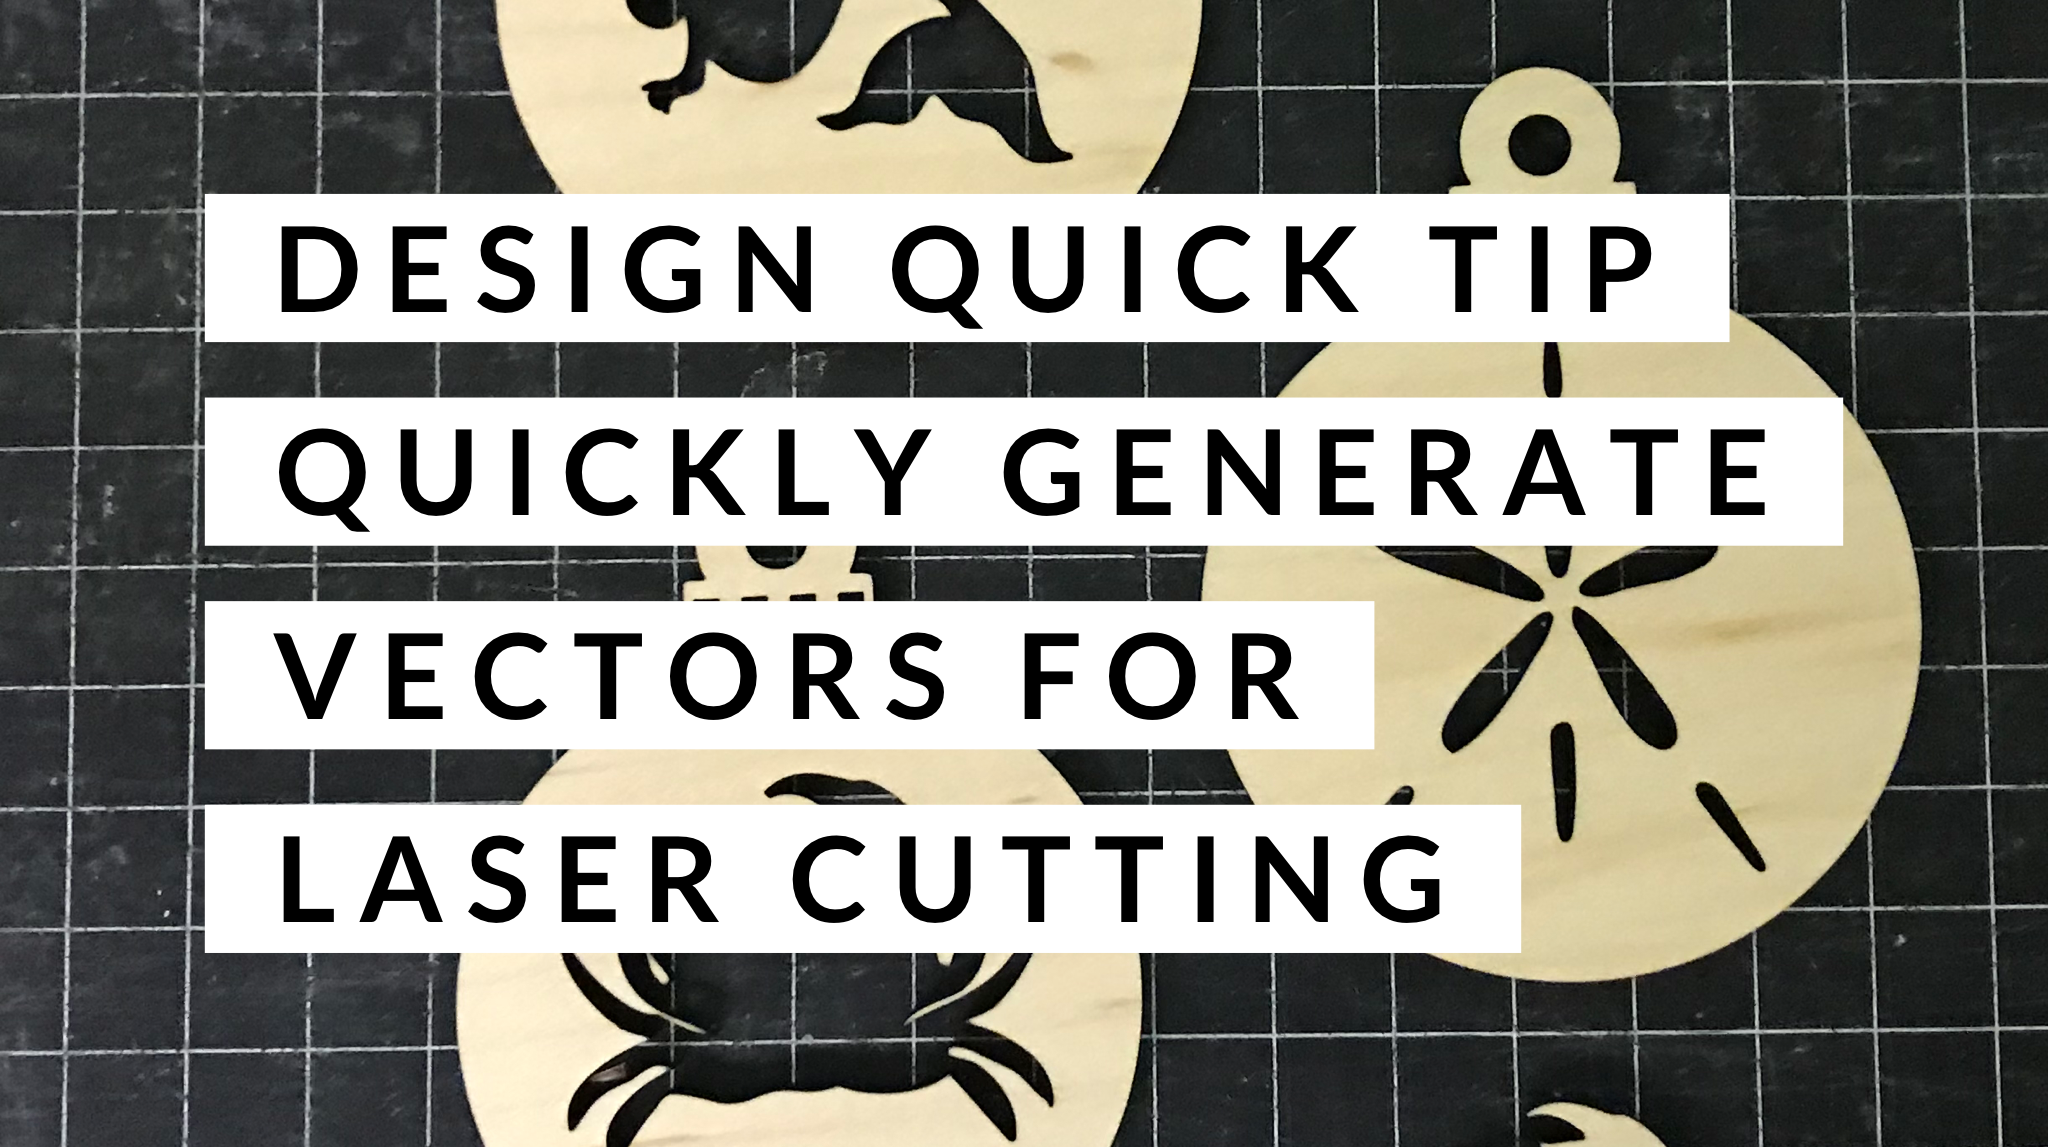 Quick Tip Design to Laser Cut